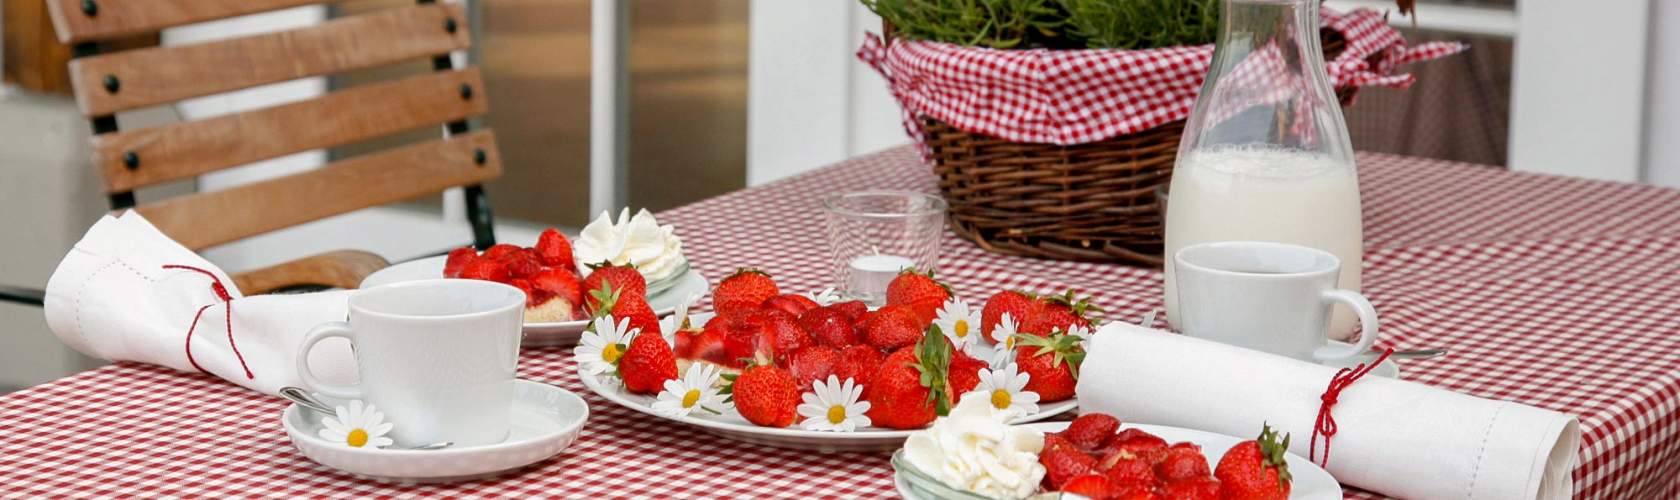 Tisch mit karierter Decke, Erdbeeren und einer Karaffe Milch